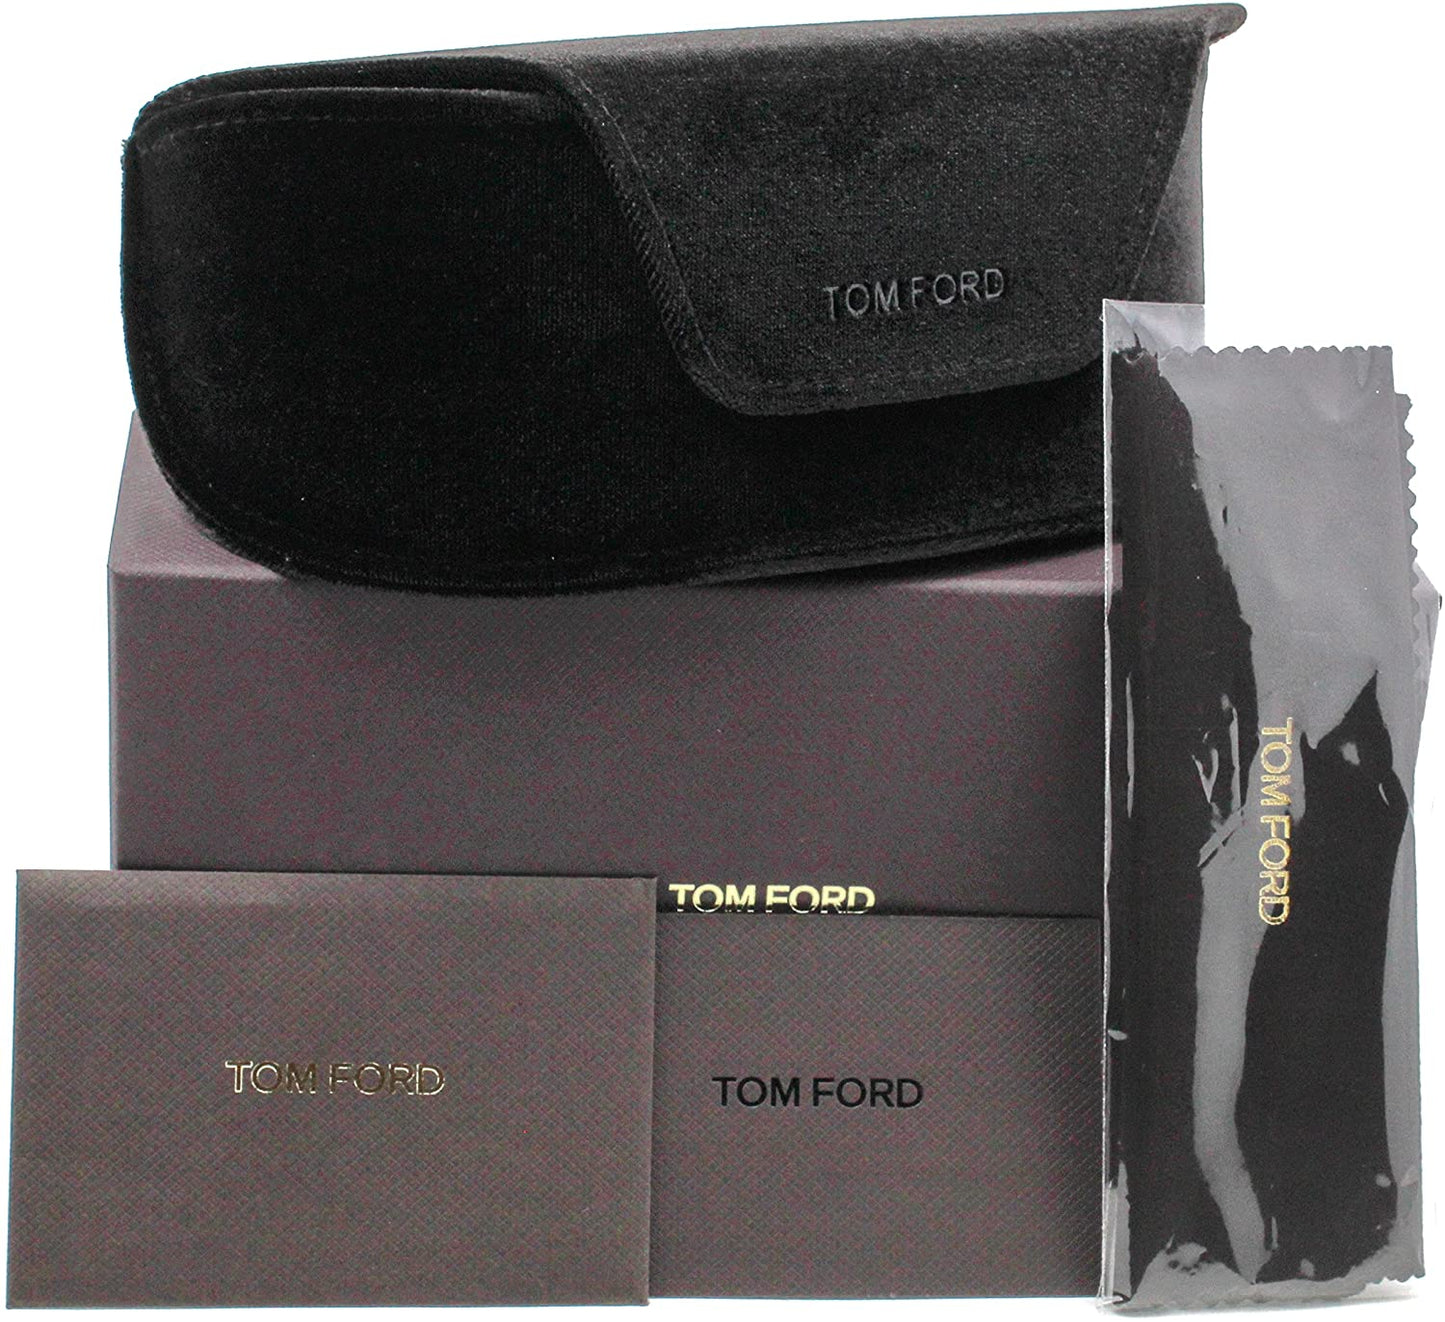 Tom Ford FT5663-B-056 55mm New Eyeglasses